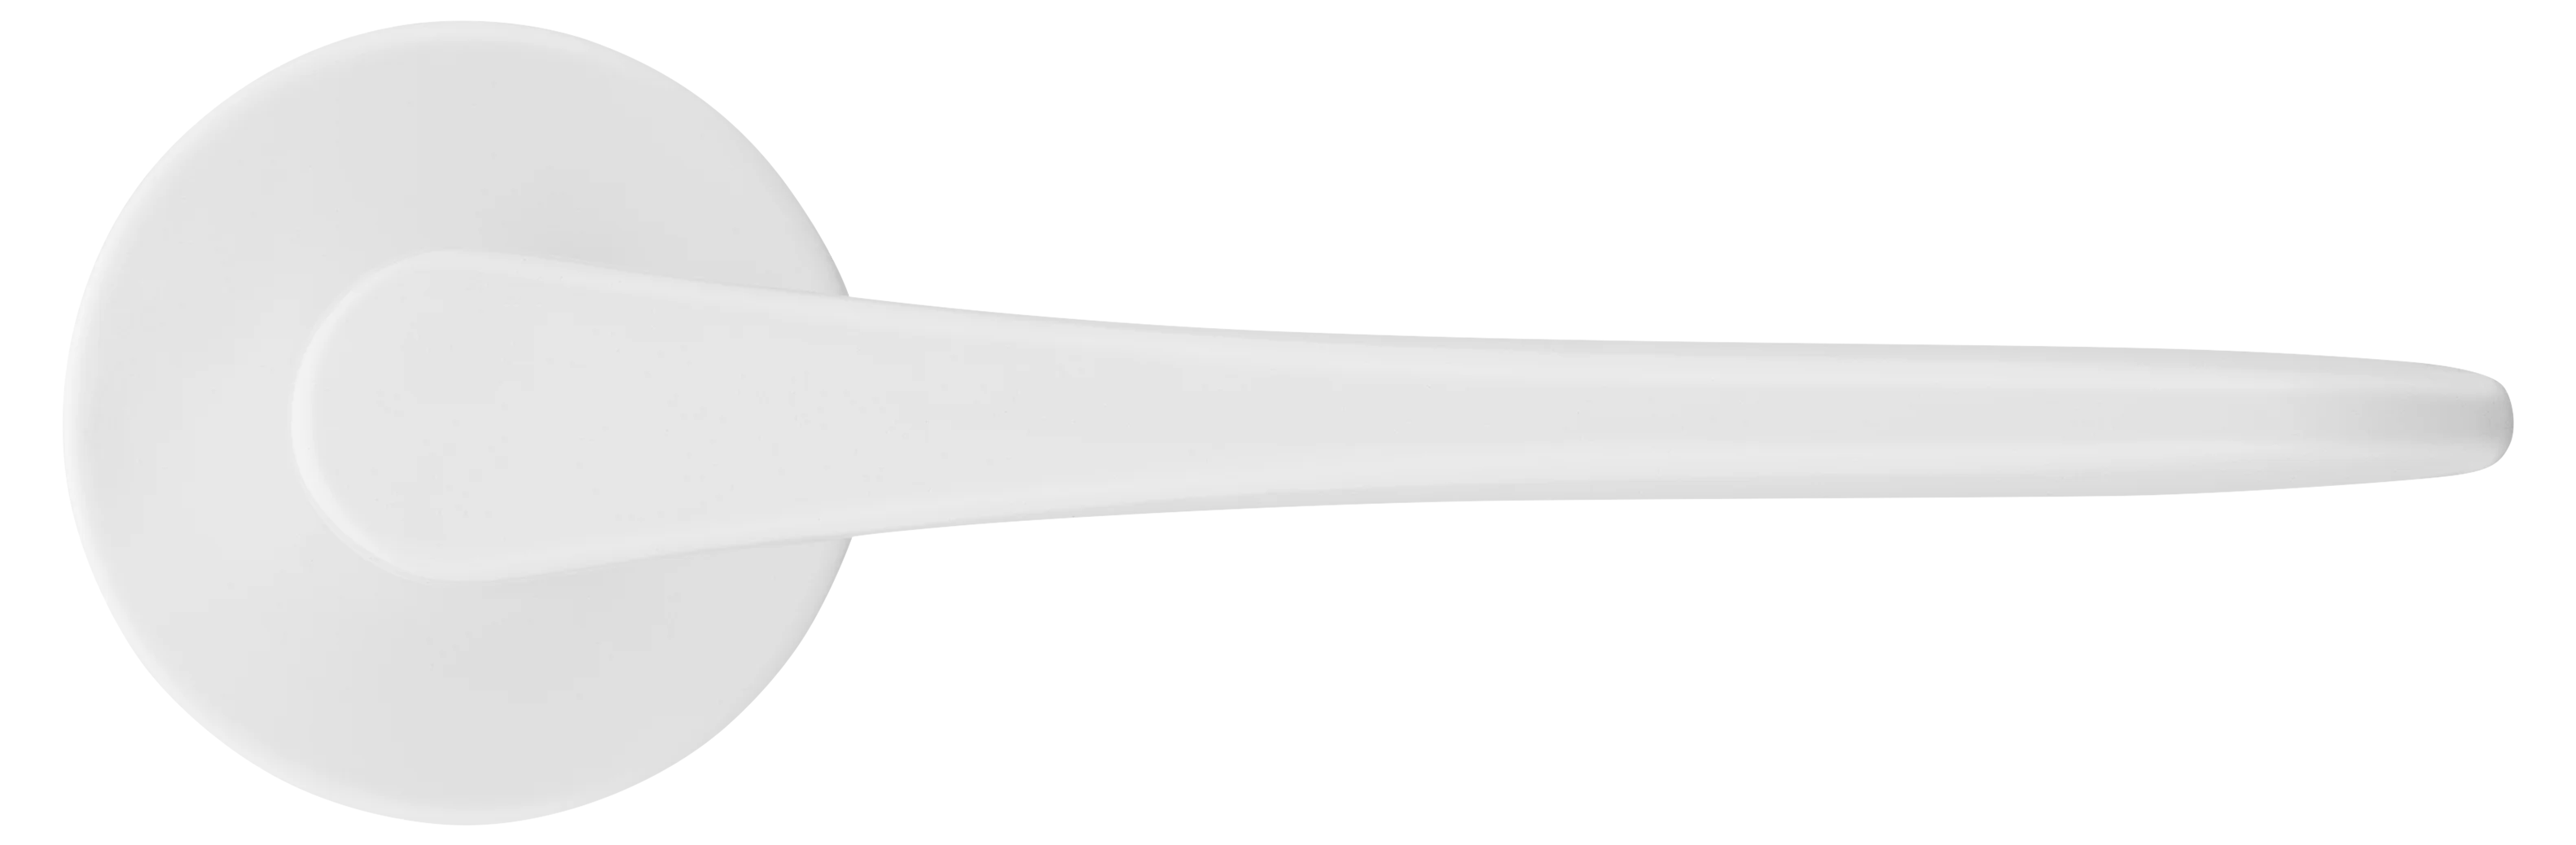 AULA R5 BIA, ручка дверная на розетке 7мм, цвет -  белый фото купить в Липецке